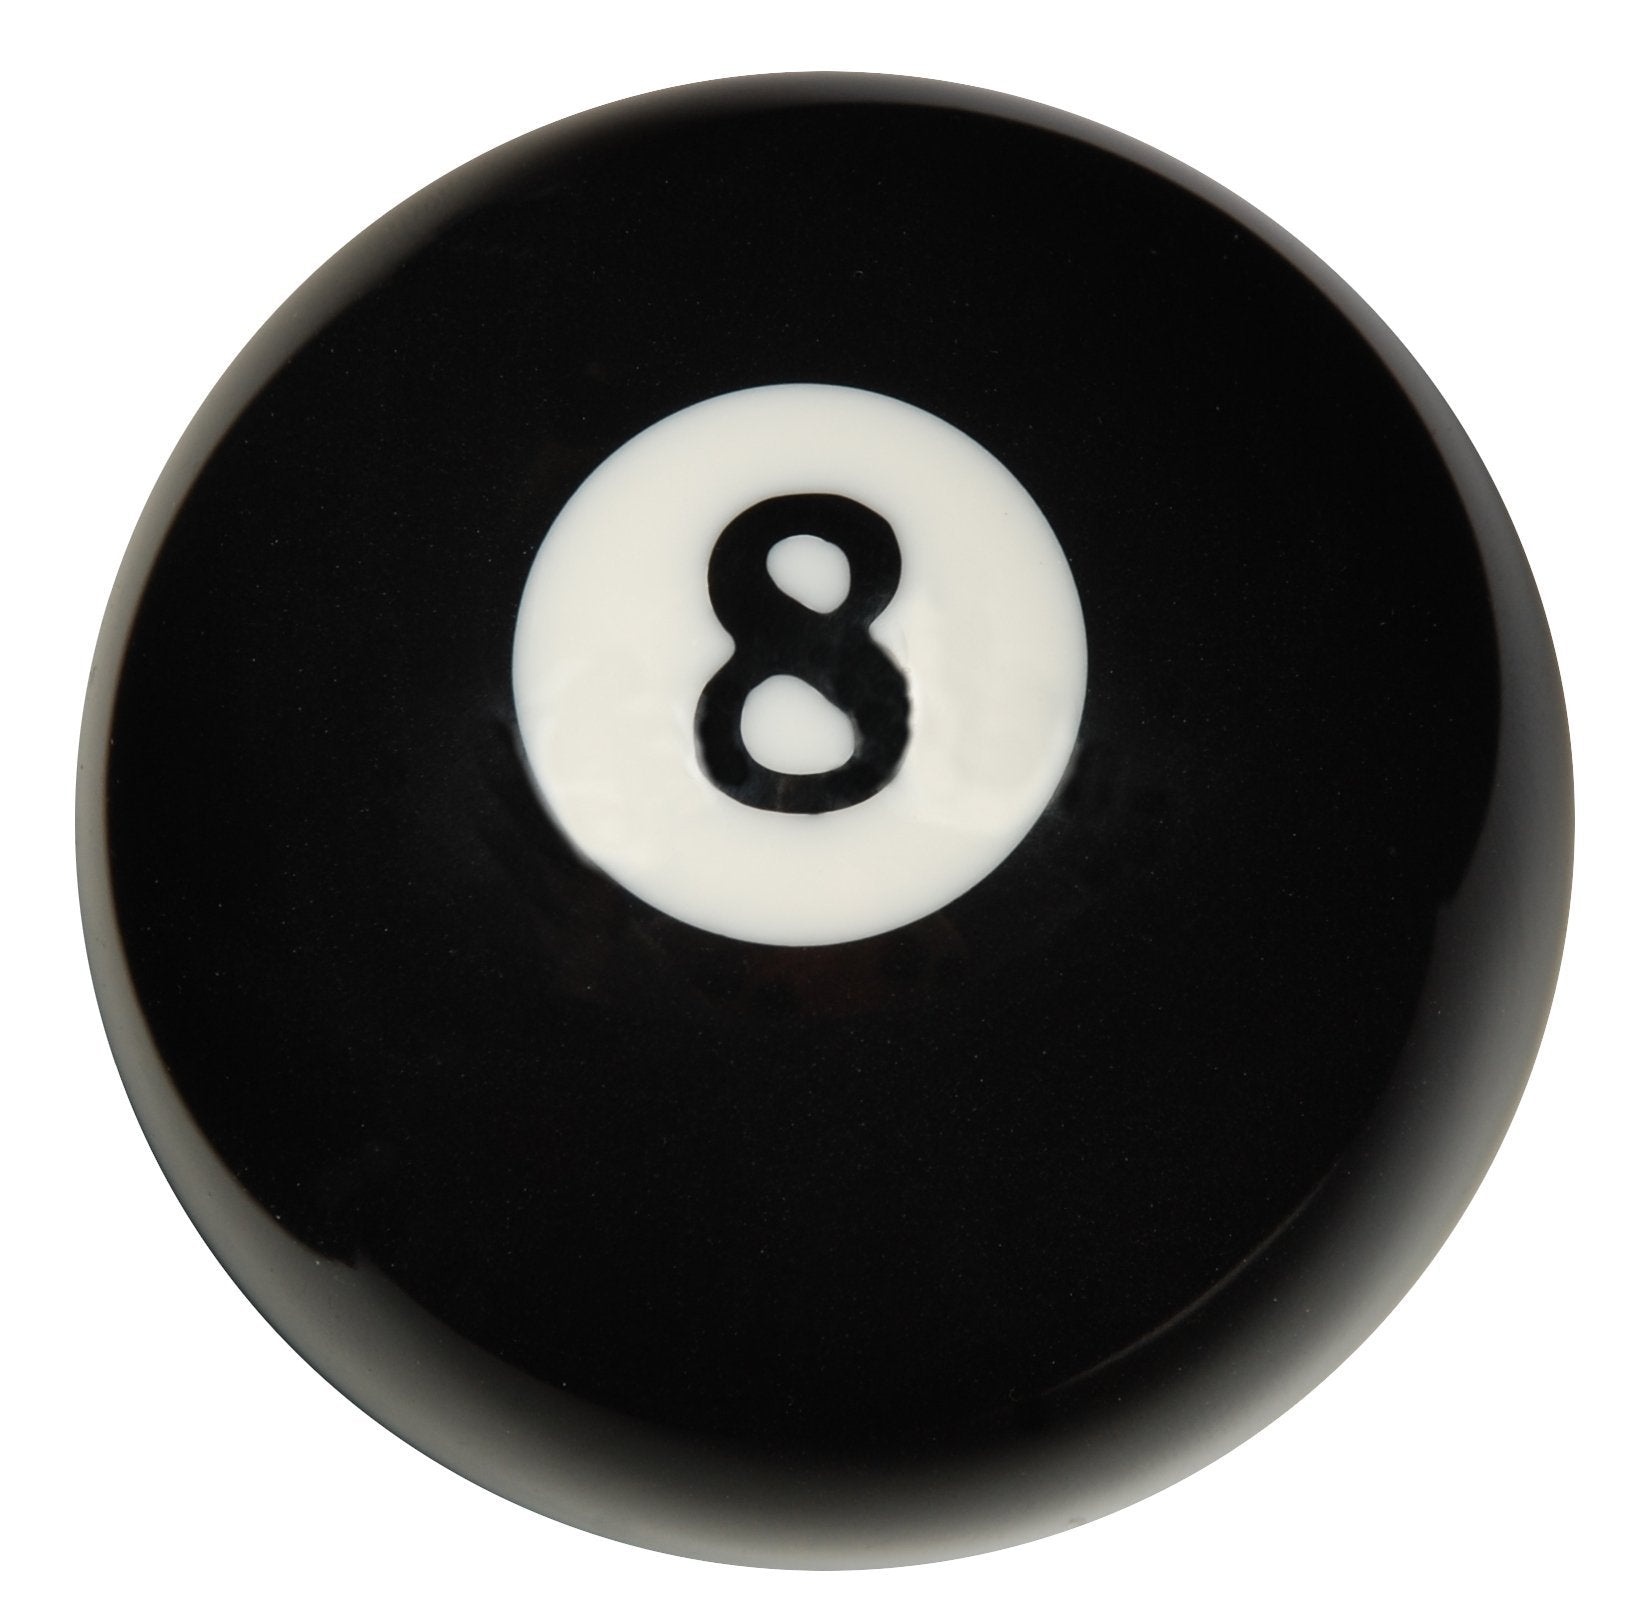 # 8 Ball Regulation Size 2 1/4